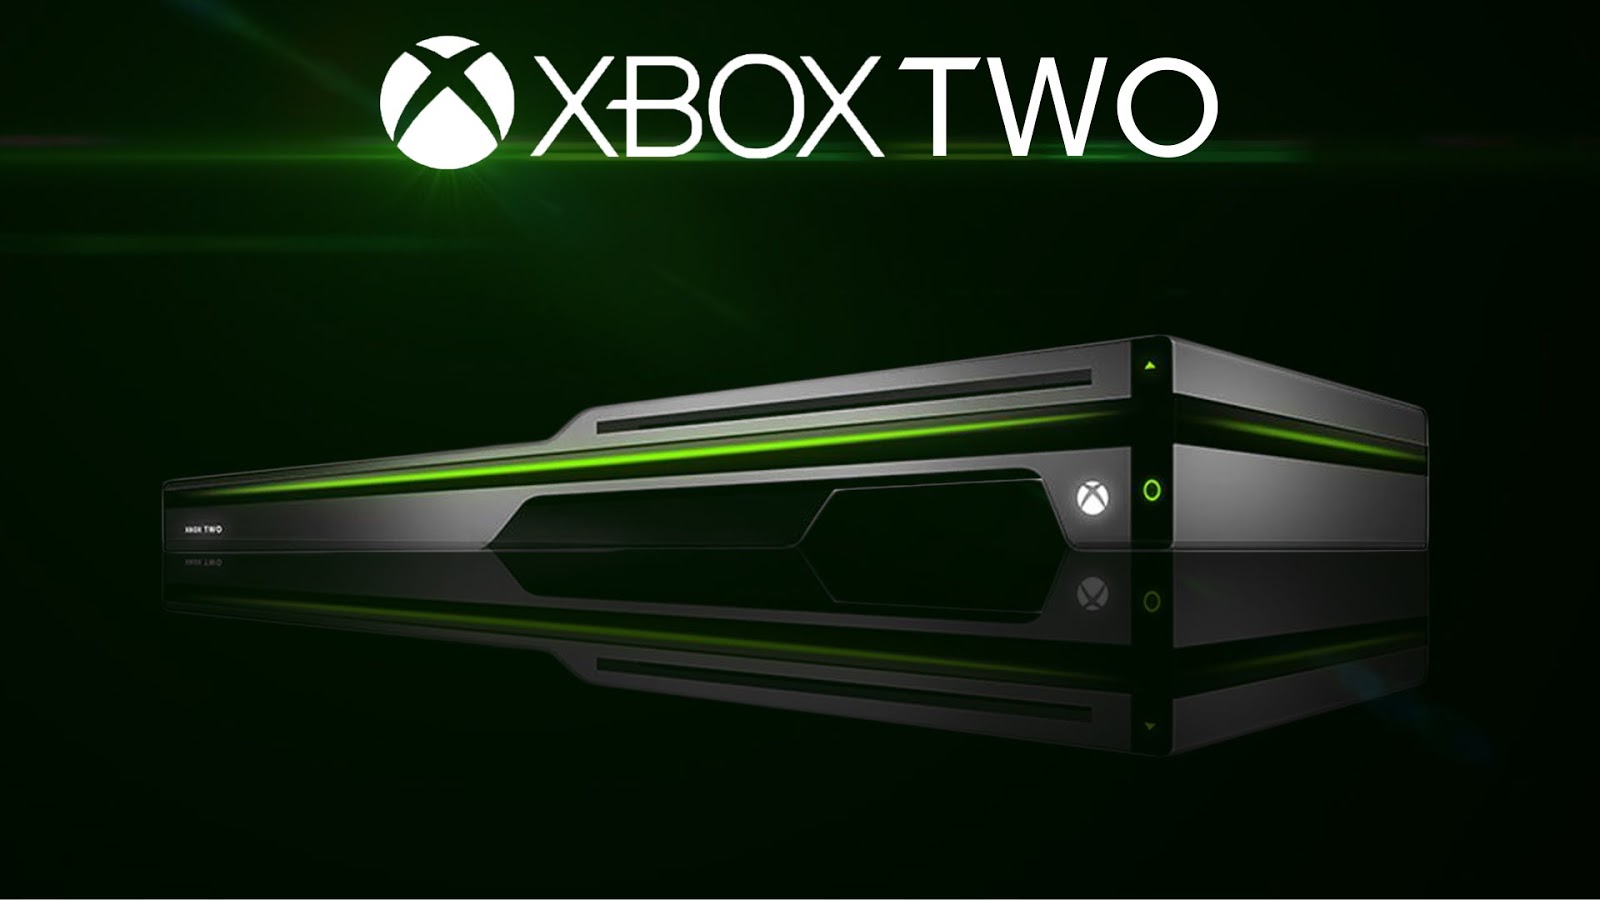 Xbox series дата выхода в россии. Хбокс оне 2021. Хбокс 2. Xbox two и ps5. Xbox 2021.